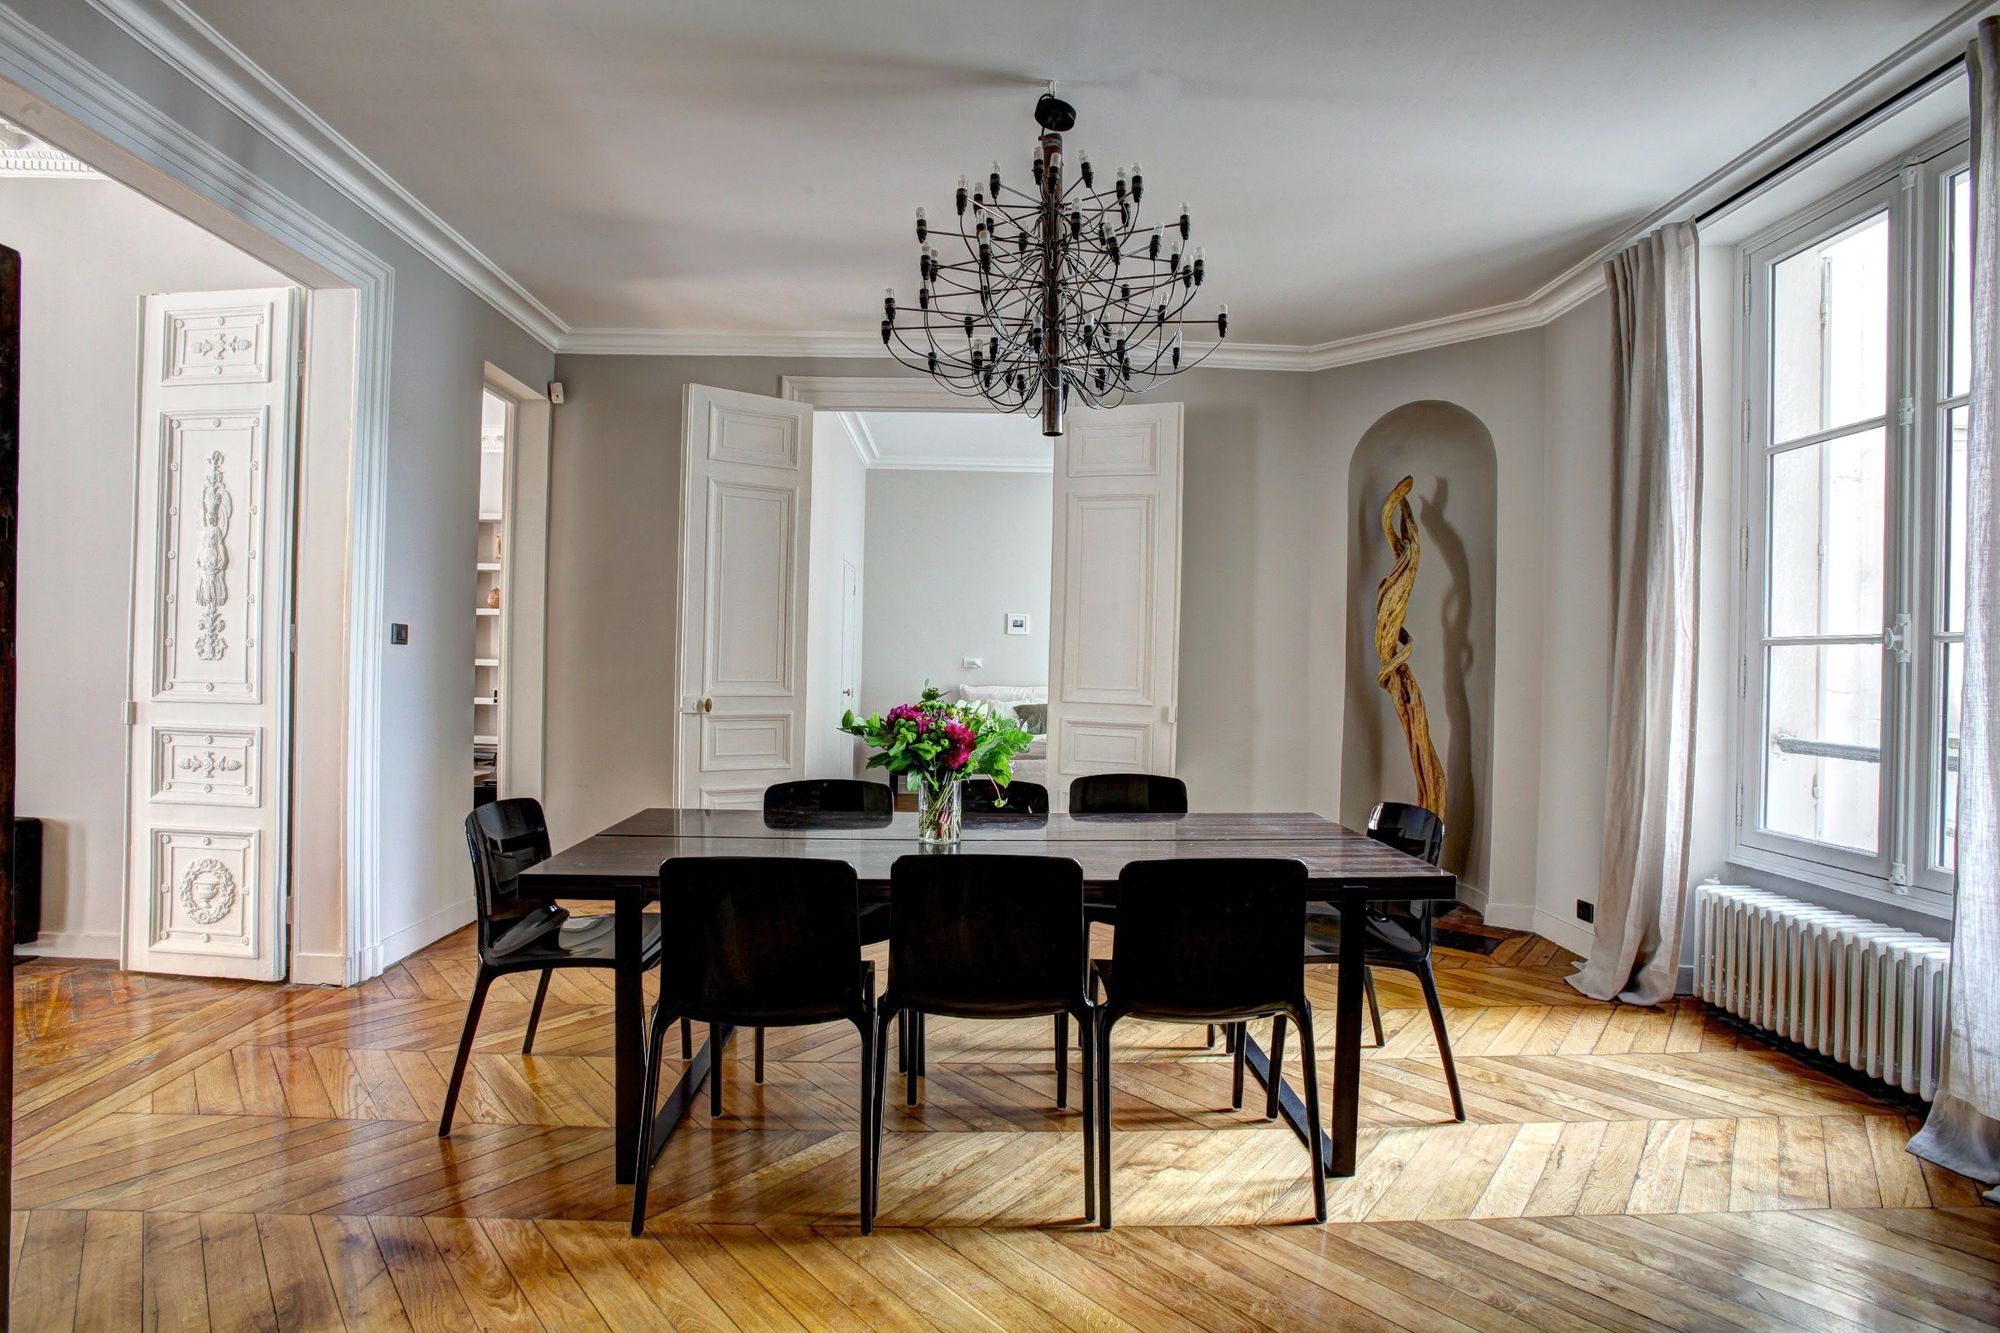 Decora tu casa con estilo parisino sin apenas comprar nada nuevo